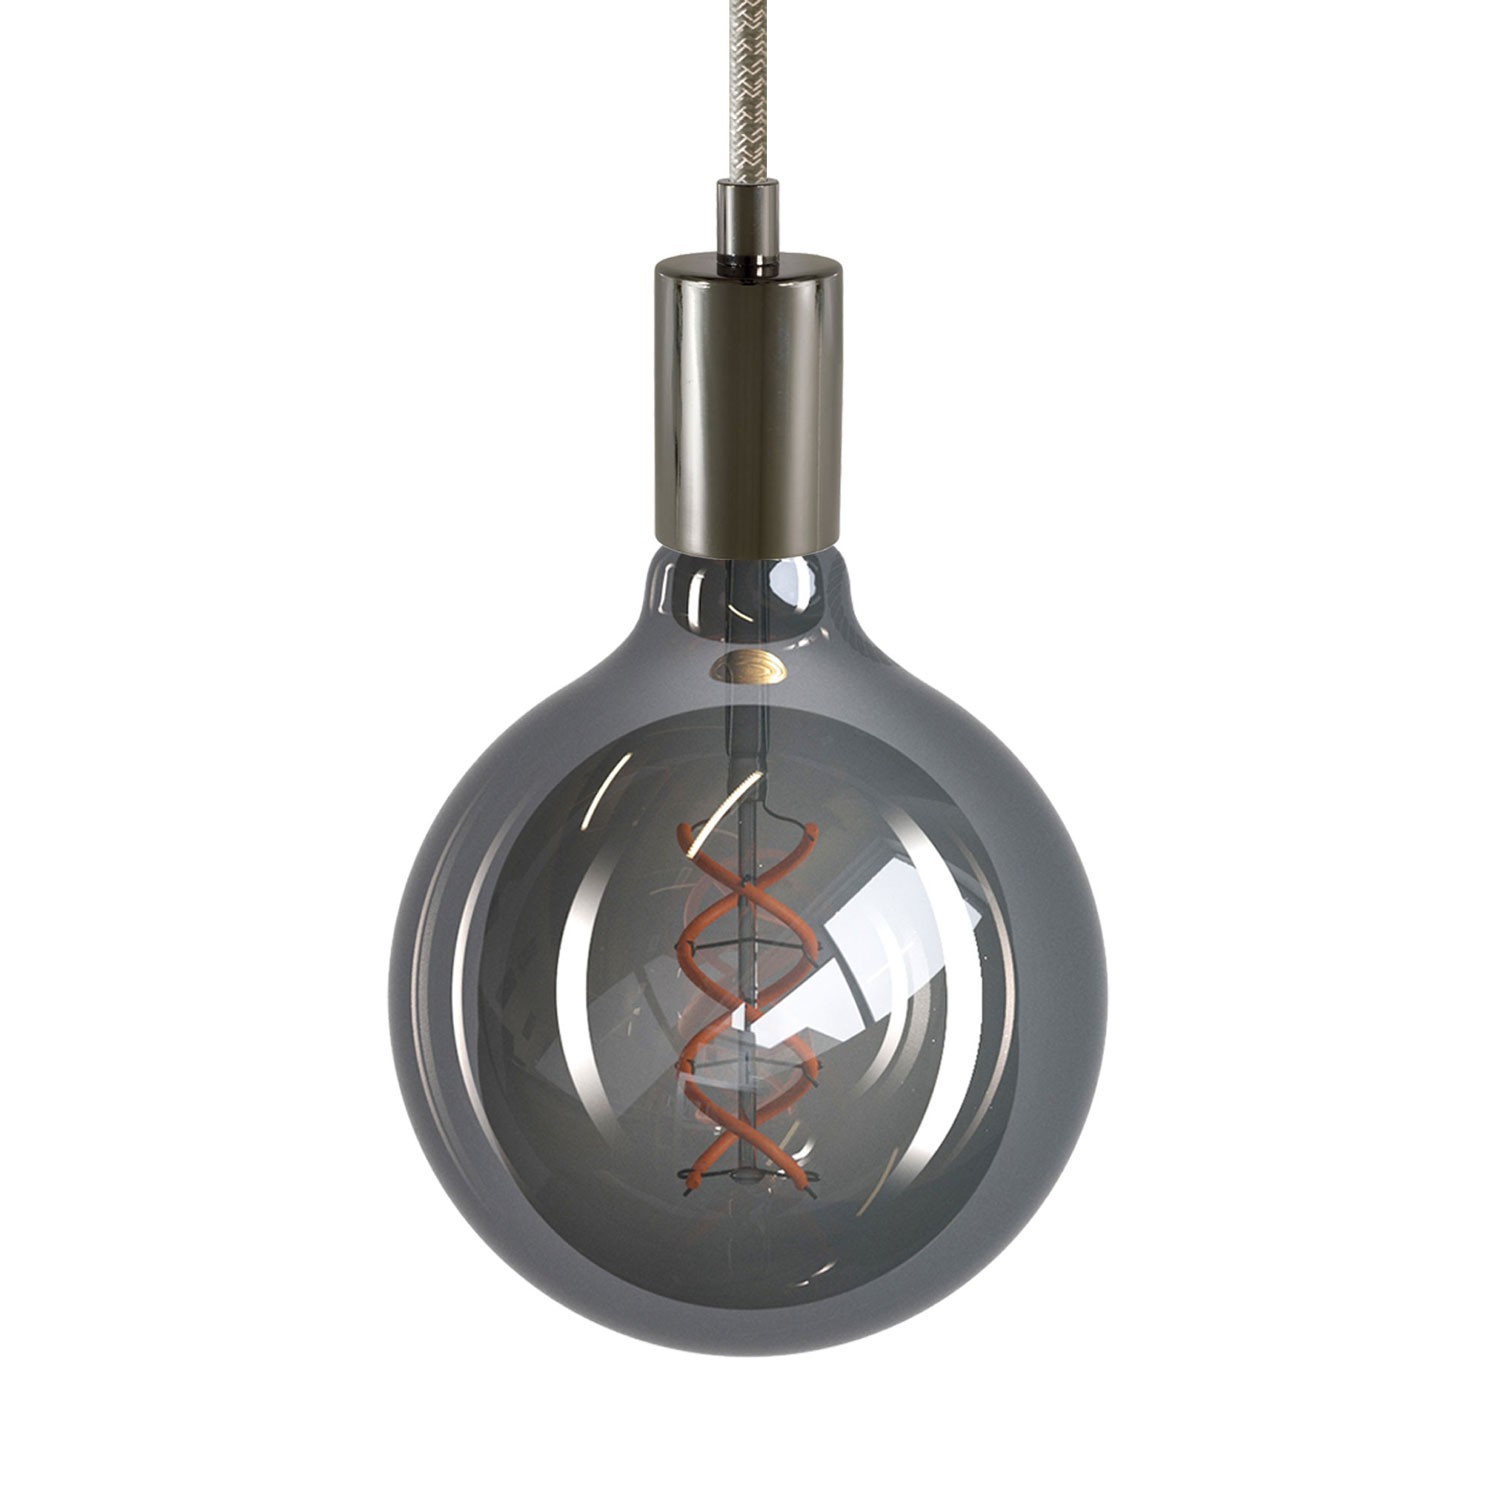 Hanglamp vervaardigd in Italië met gedraaide textielkabel en metalen afwerking